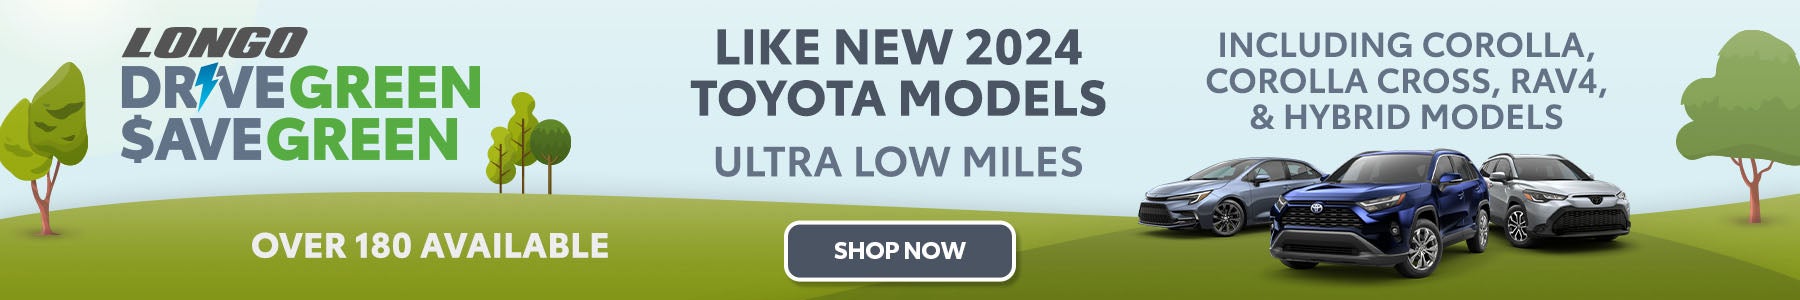 Like New Toyota Models